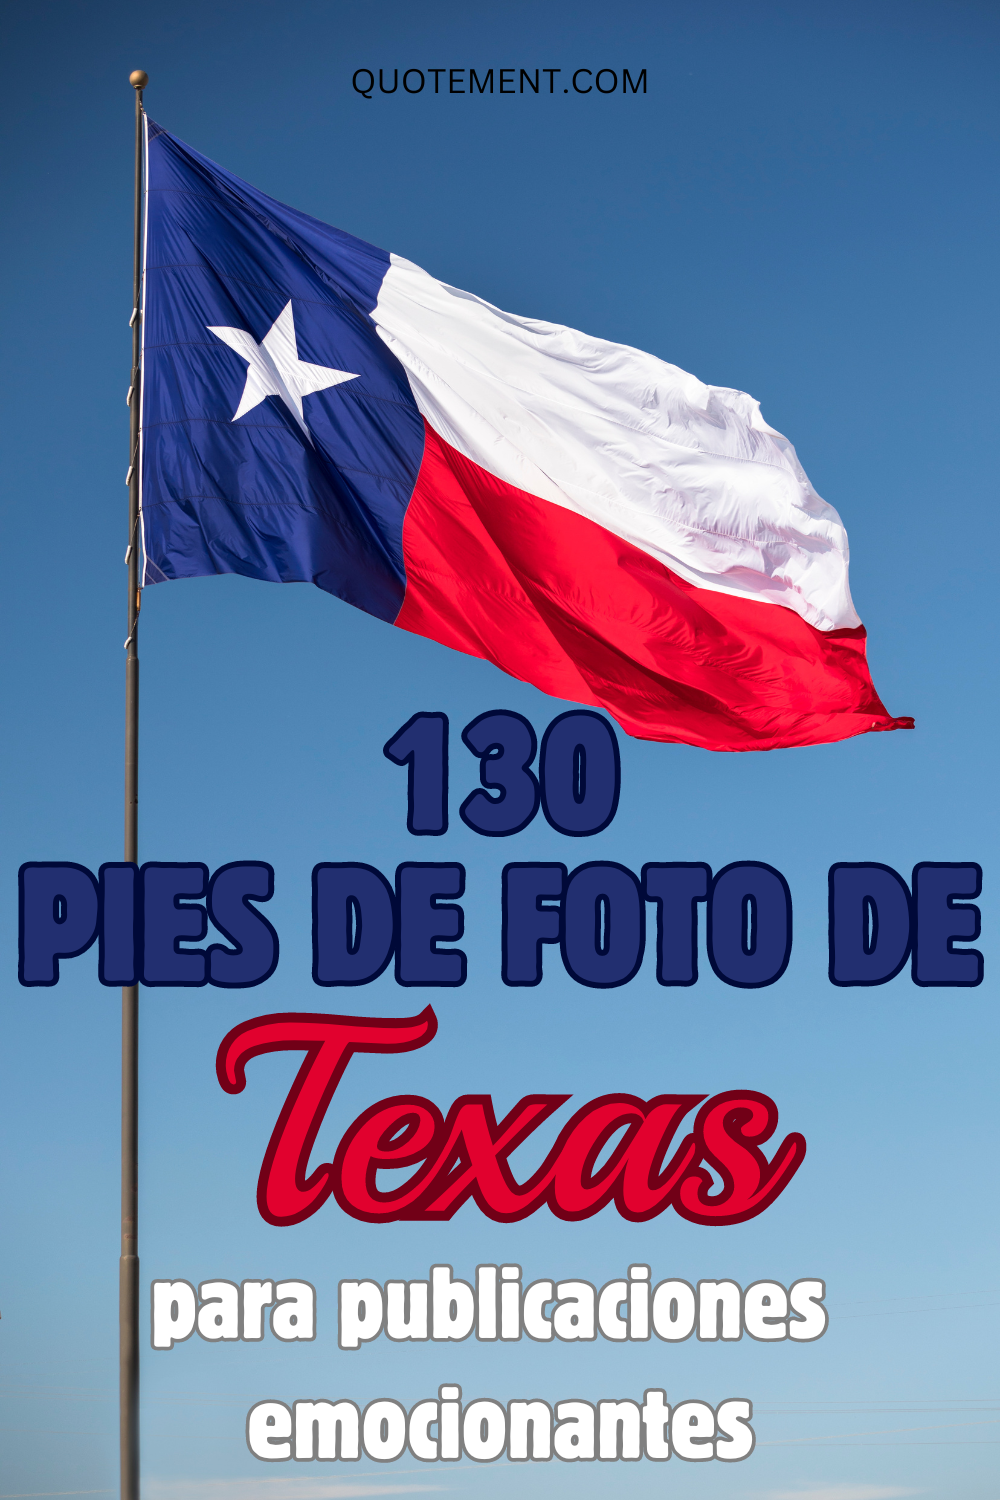 130 pies de foto de Texas en Instagram para capturar los mejores recuerdos